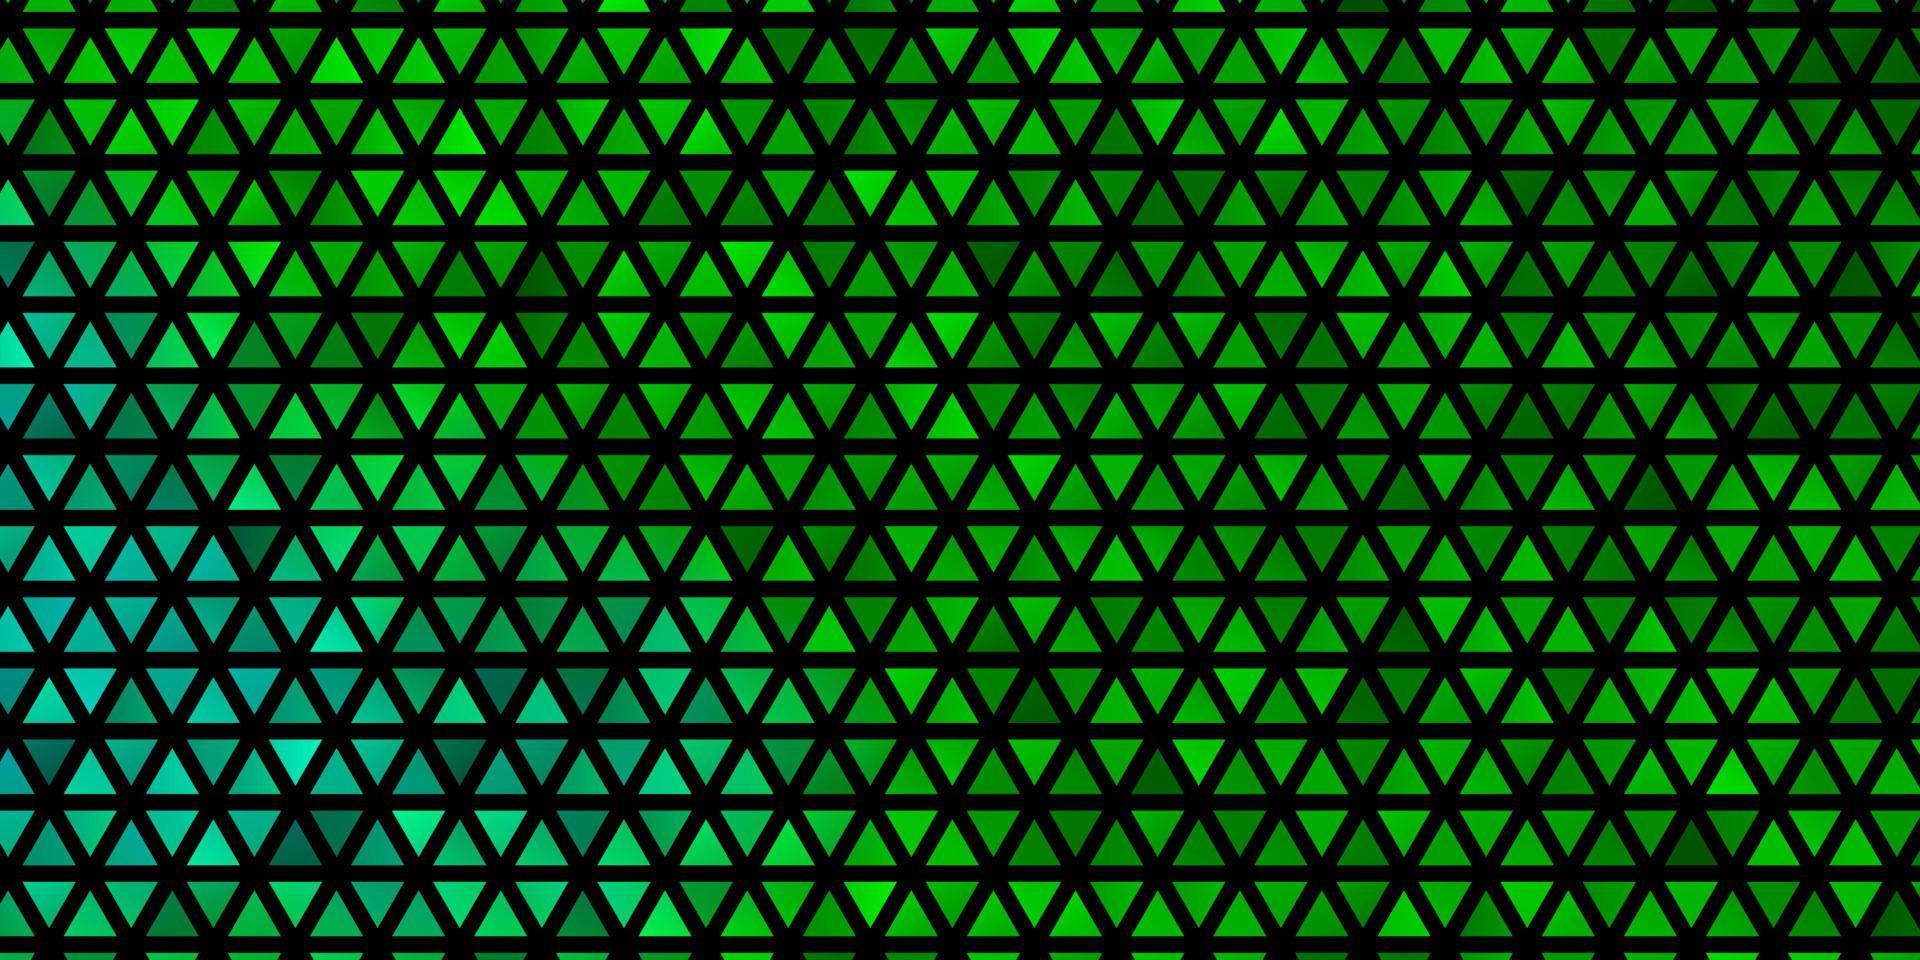 trama vettoriale verde chiaro con stile triangolare.